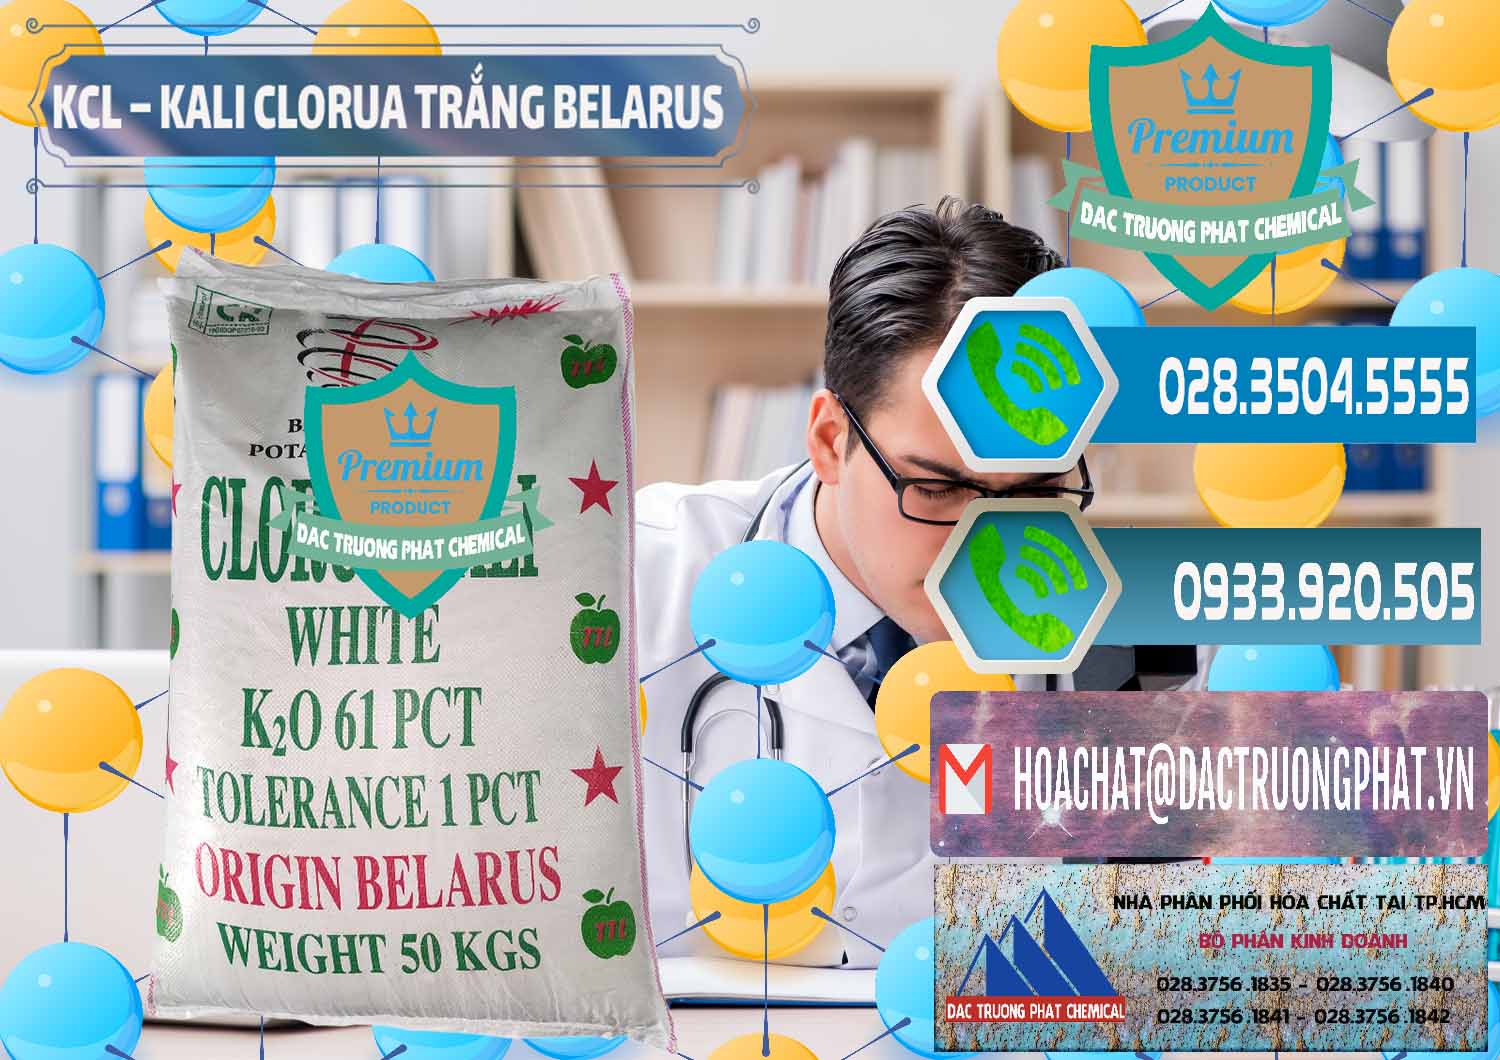 Cty bán _ cung cấp KCL – Kali Clorua Trắng Belarus - 0085 - Chuyên cung cấp ( bán ) hóa chất tại TP.HCM - congtyhoachat.net